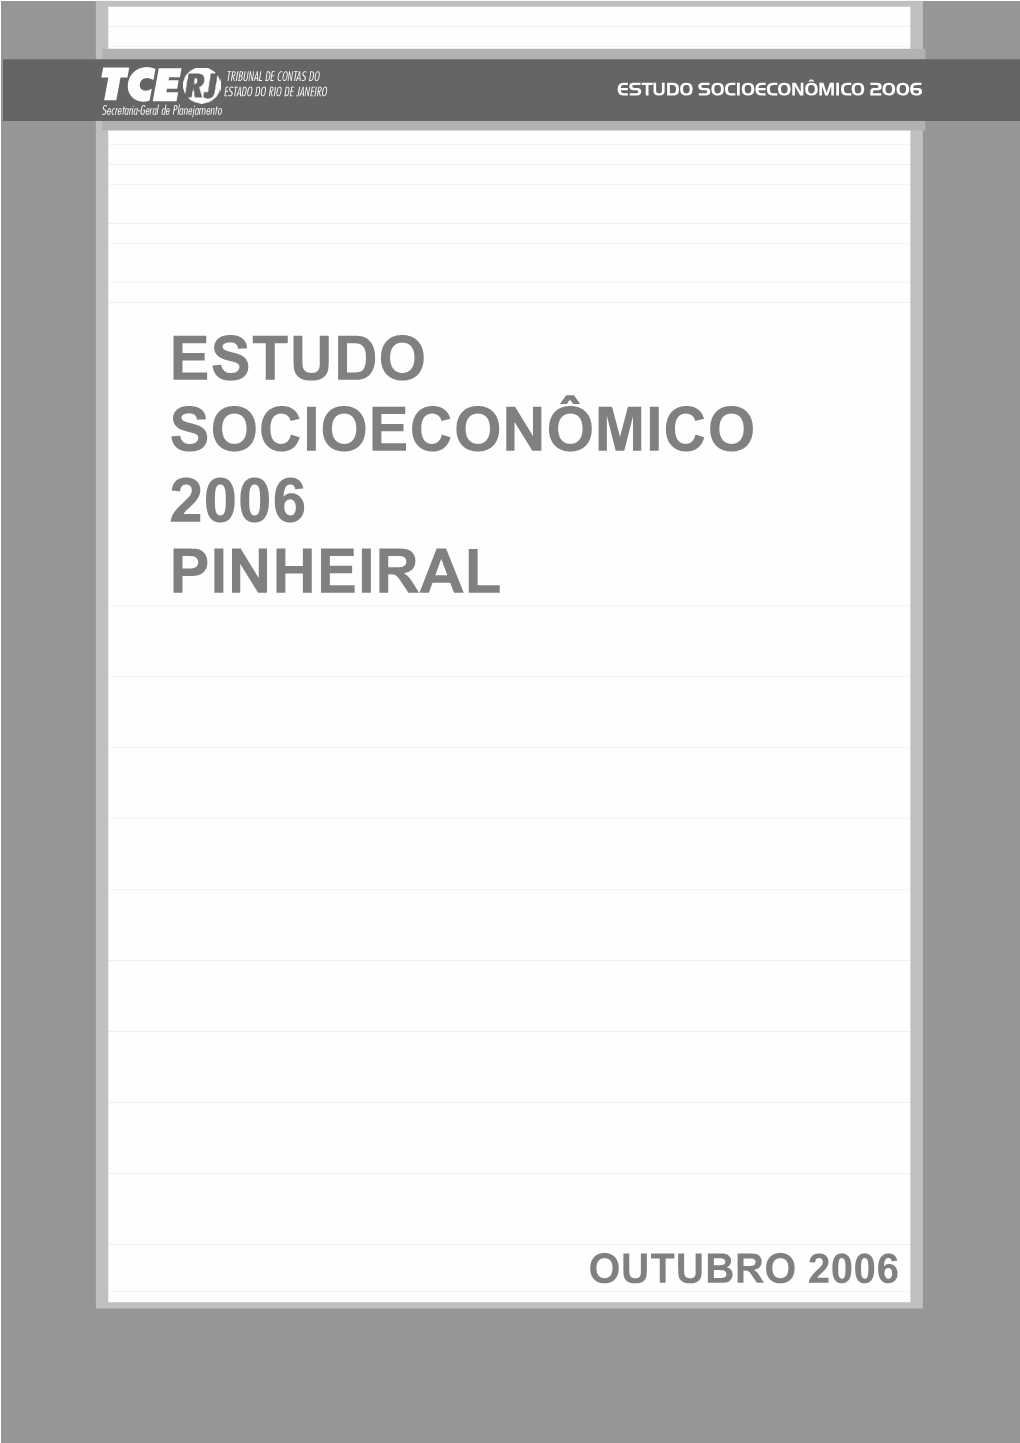 Estudo Socioeconômico 2006 Pinheiral